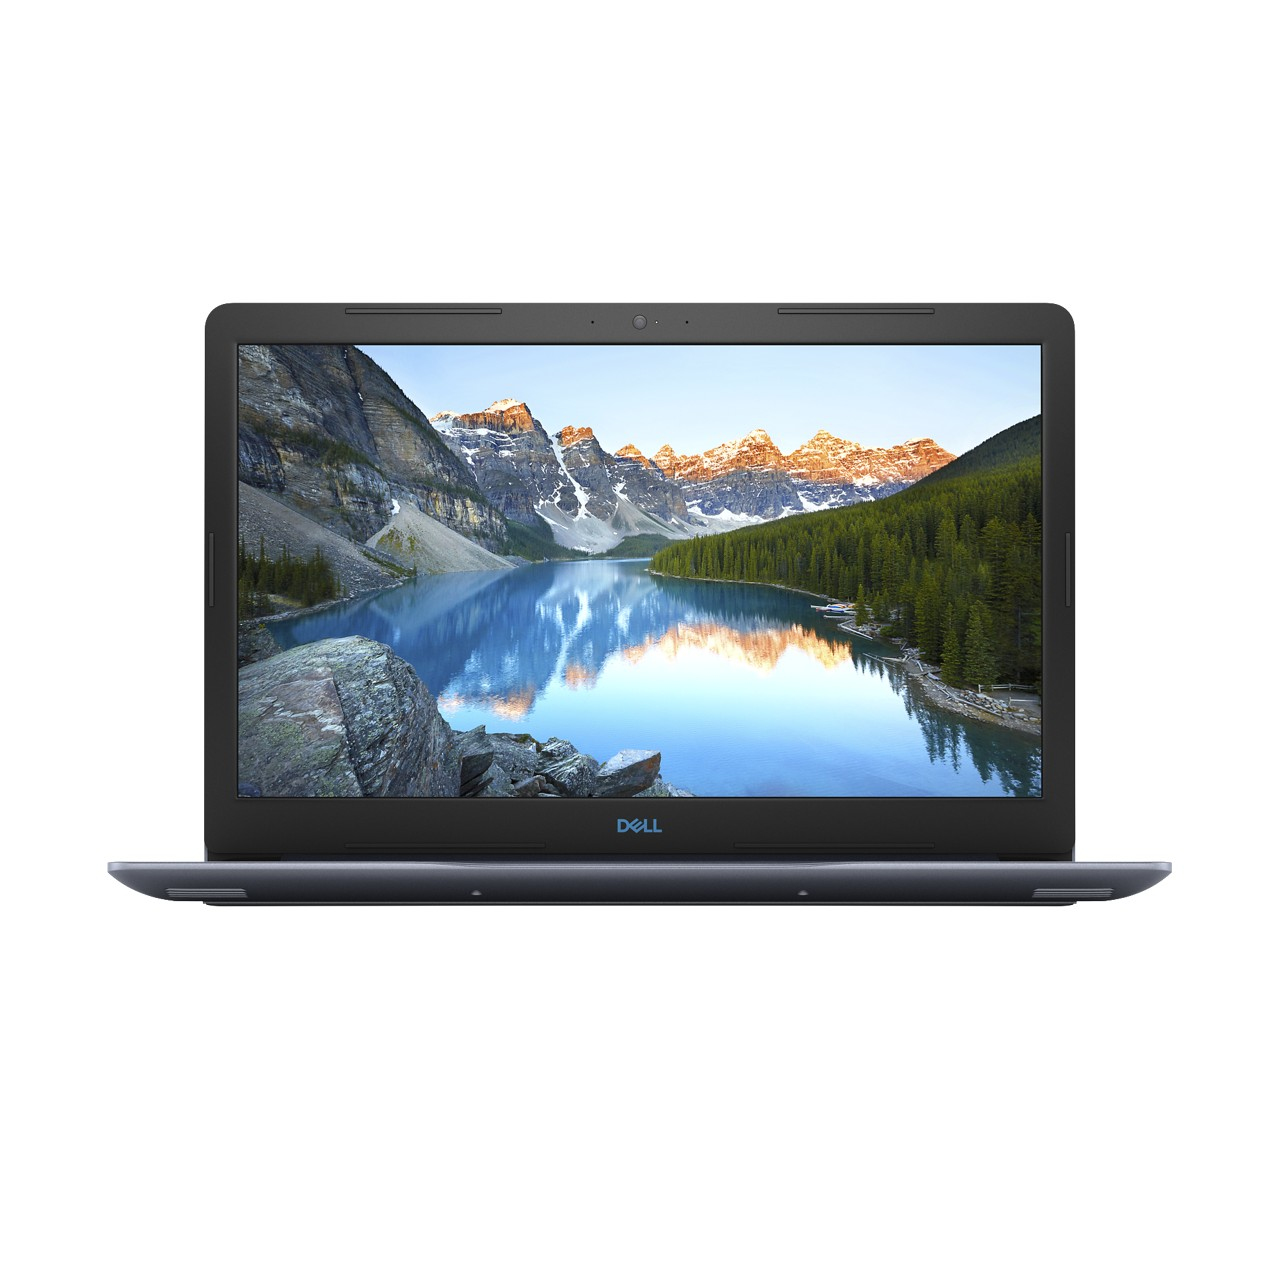 Laptop Dell G3 Core I7 8750H 8Gb 1Tb+128Gb Gtx1050Ti 17.3" Win 10